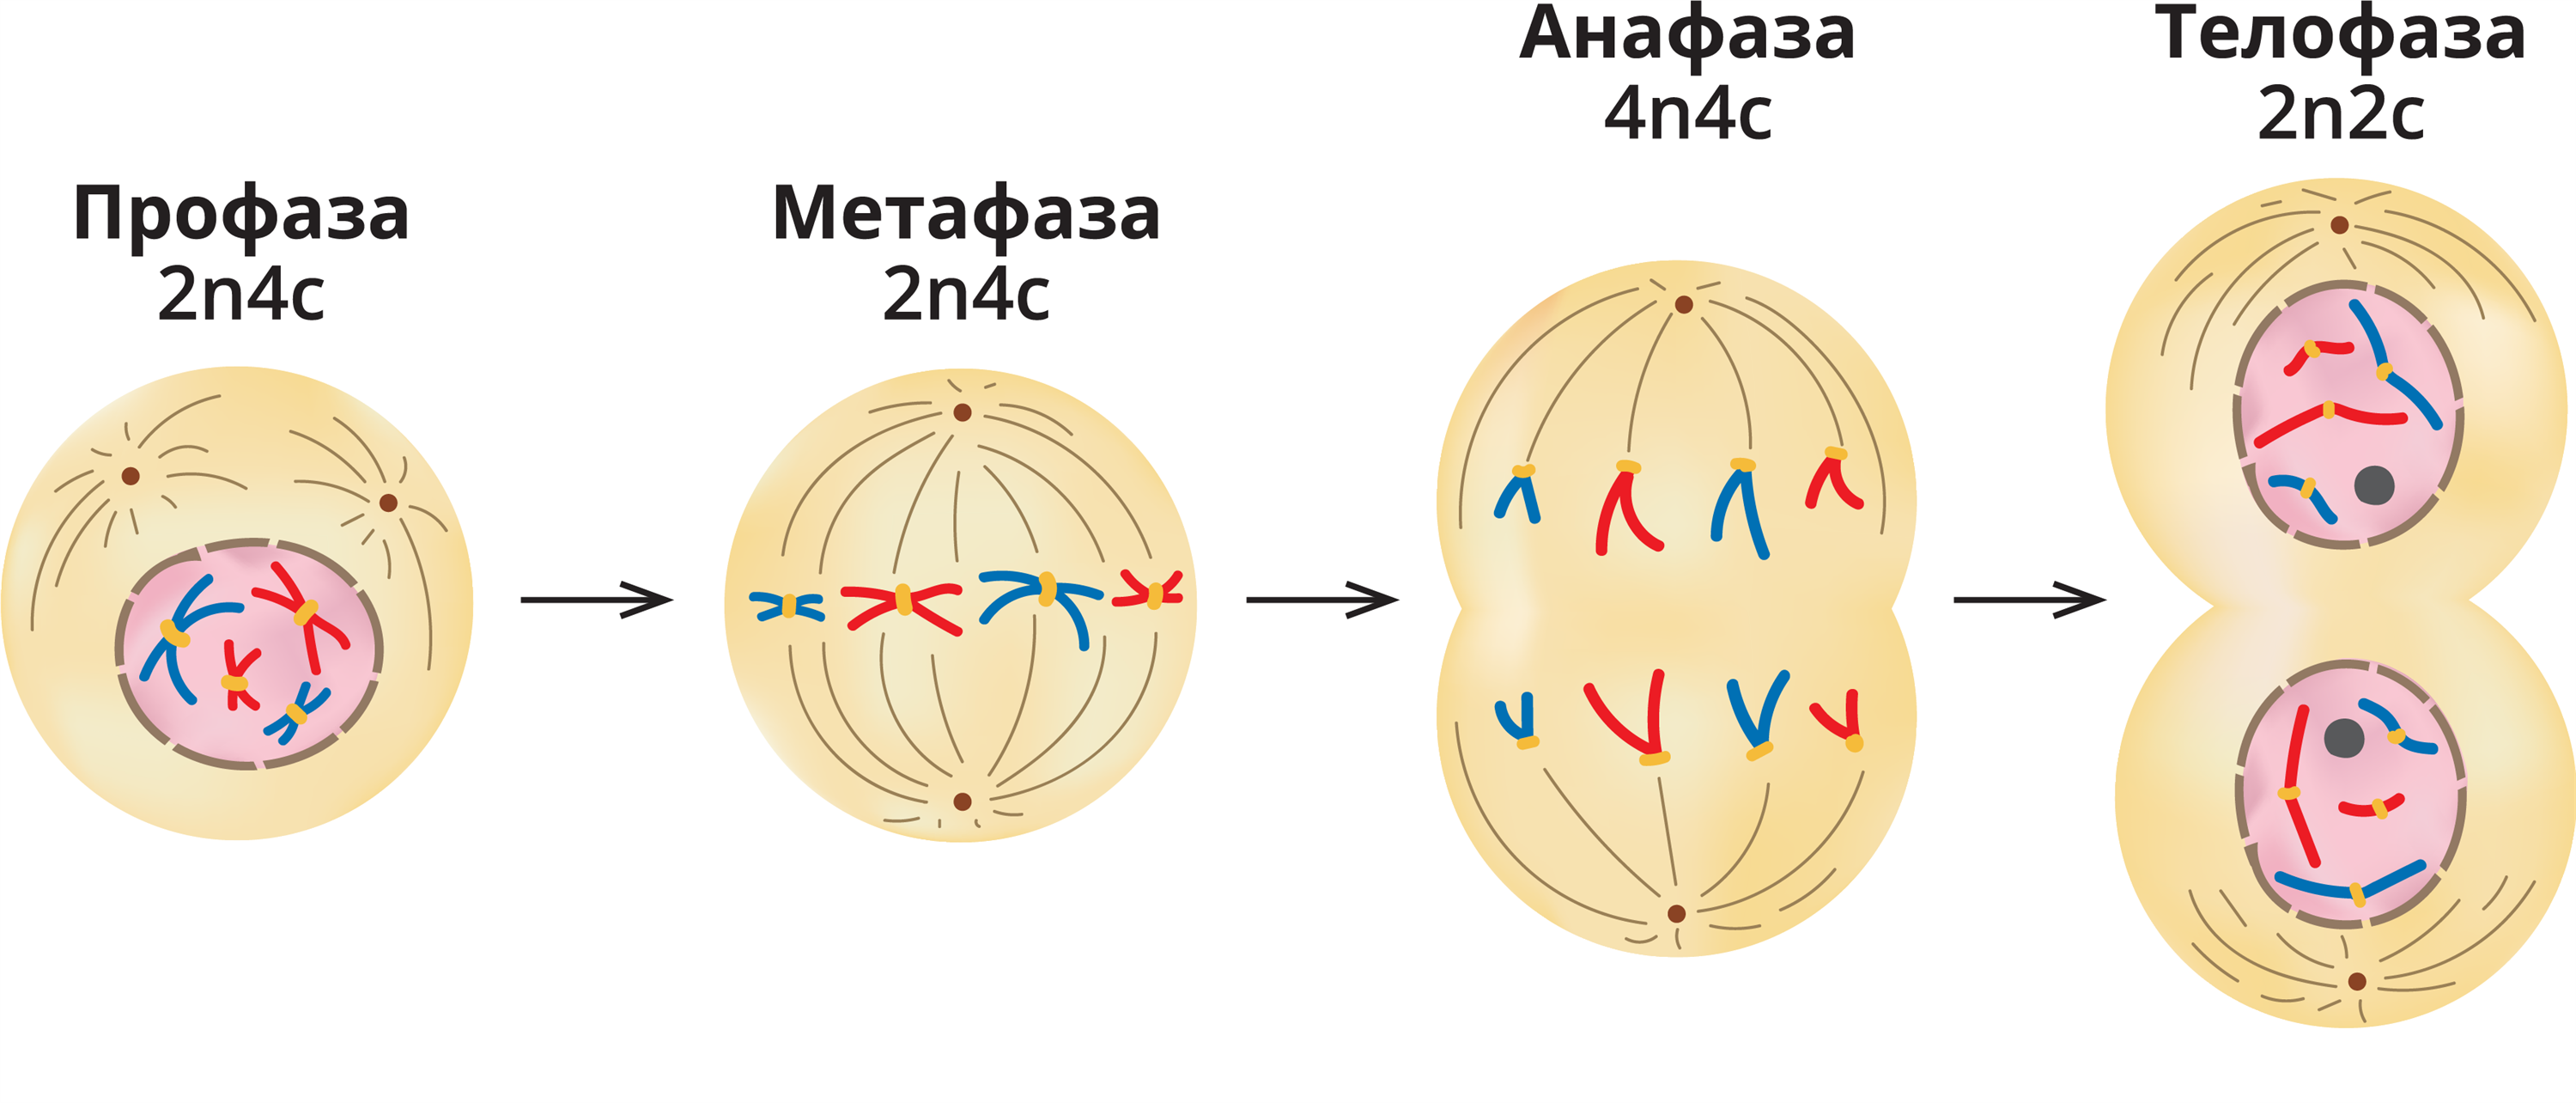 Набор хромосом и днк клетки 2n2c. Фазы деления клетки митоз рисунок. Фазы митоза схема. Профаза метафаза. Телофаза митоза.